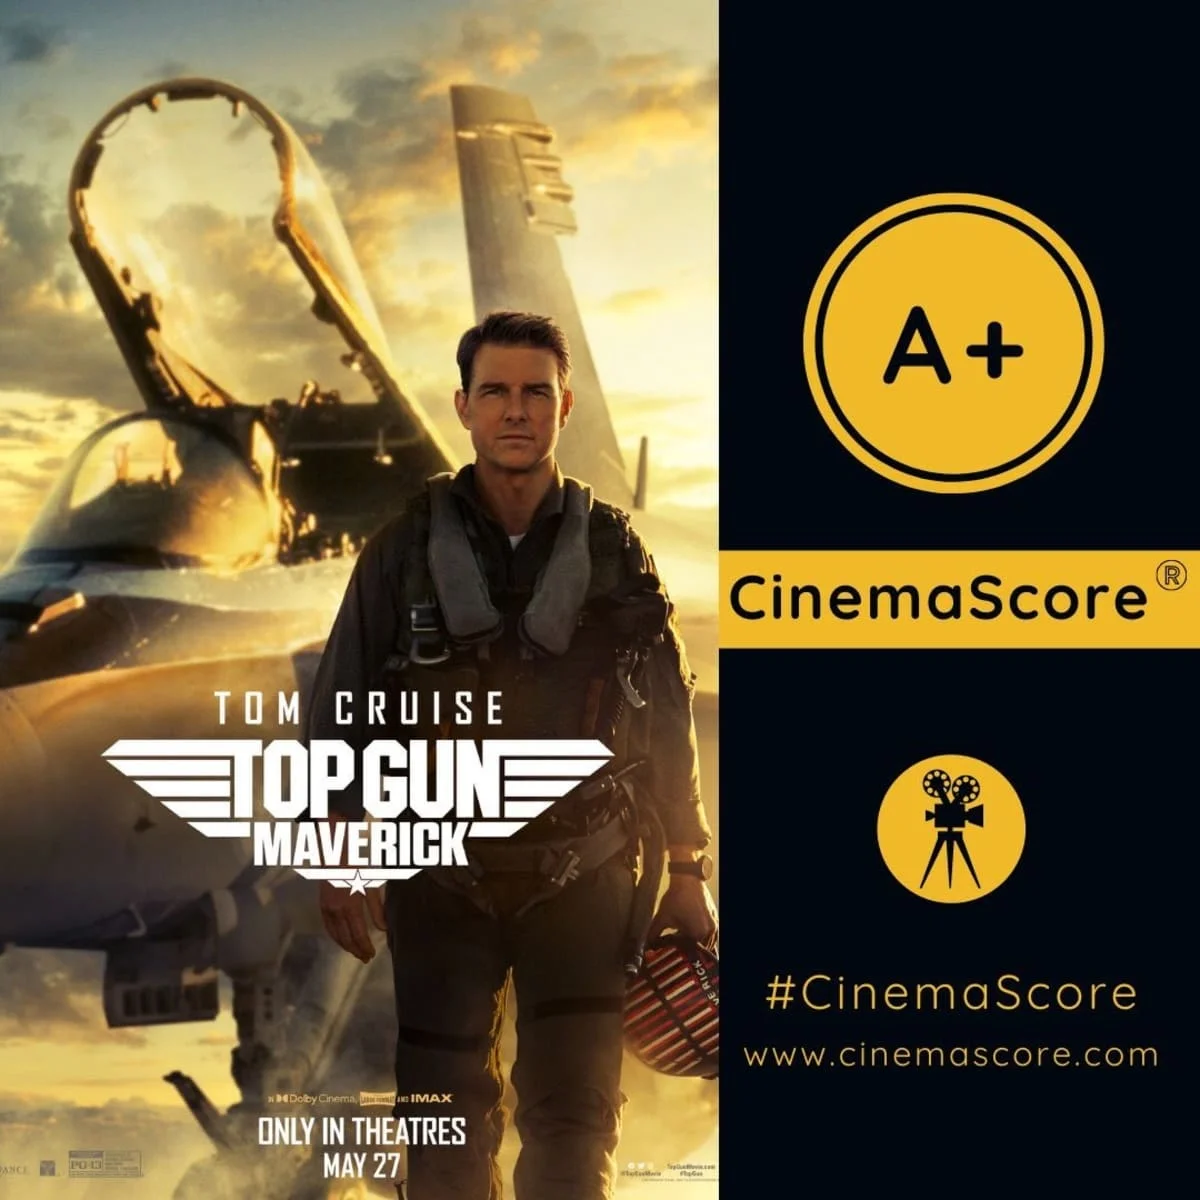 «Топ Ган: Мэверик» с Томом Крузом получил высшую зрительскую оценку на CinemaScore - фото 1